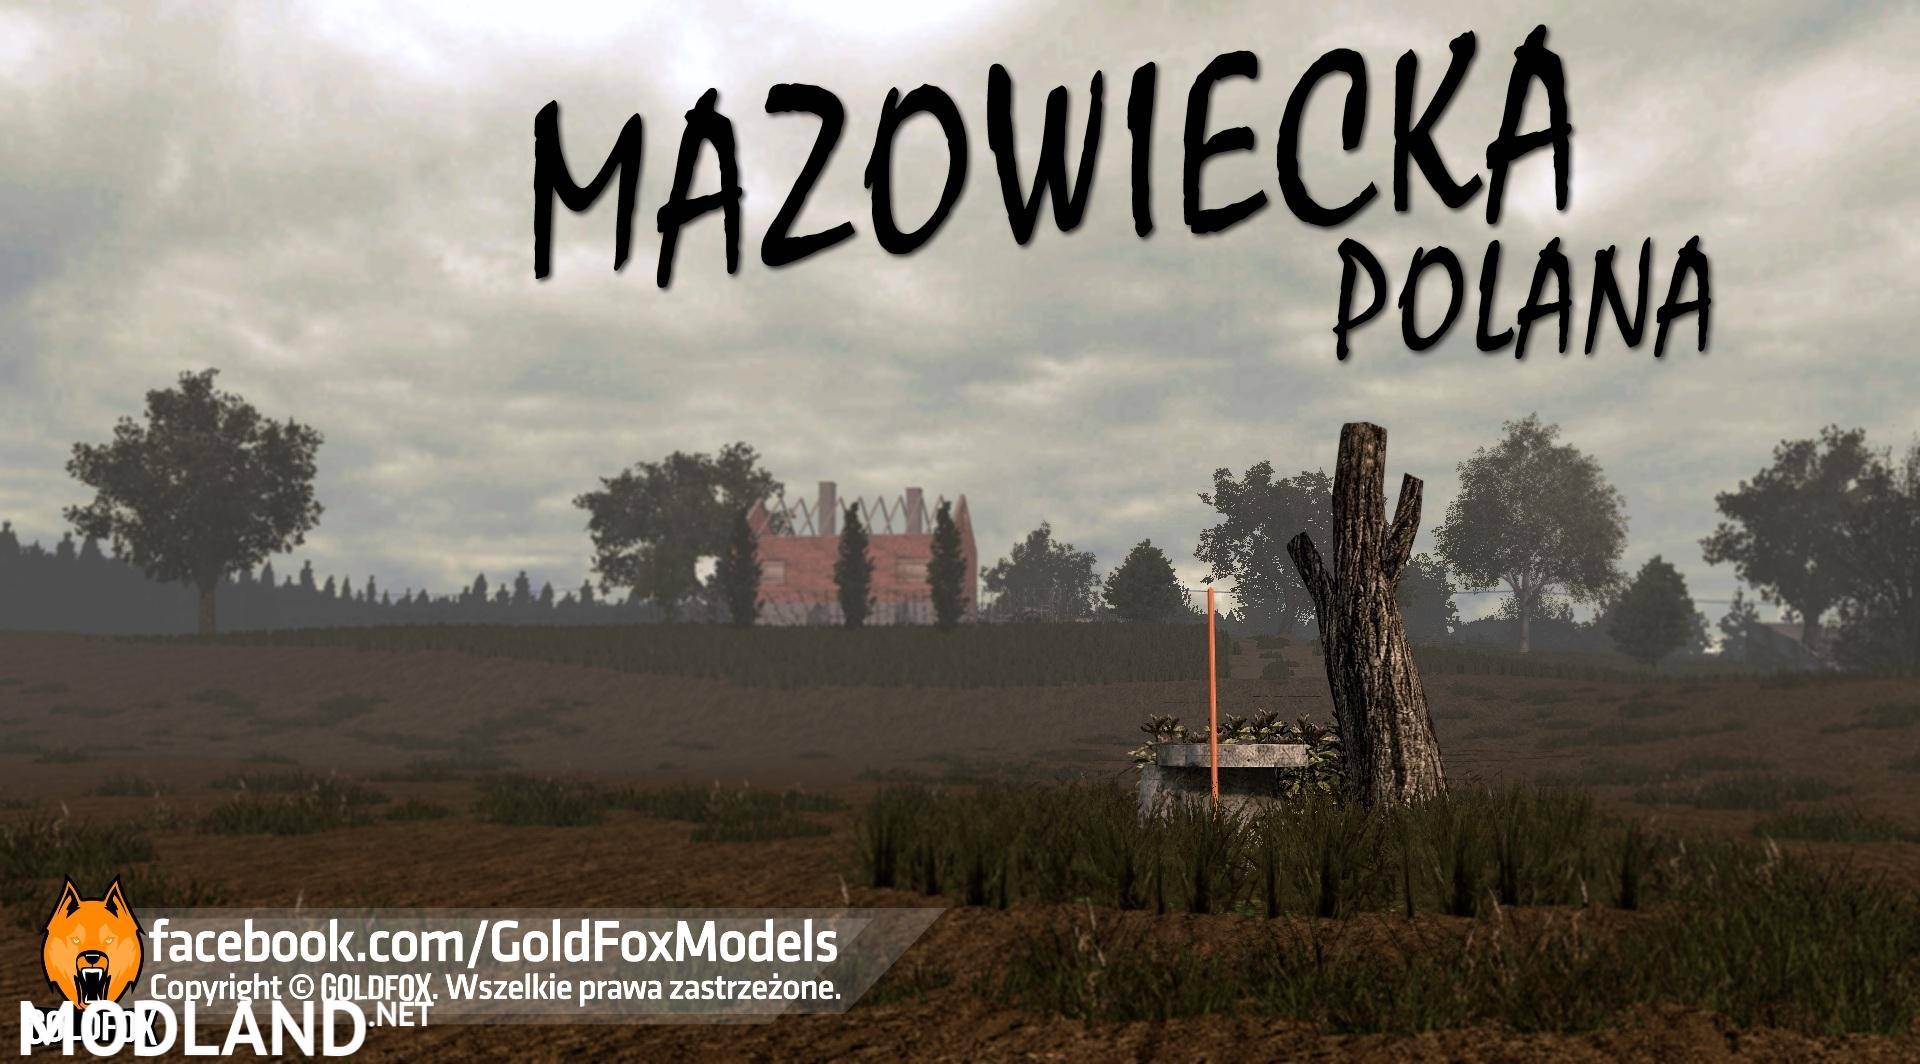 Mazowiecka Polana Map